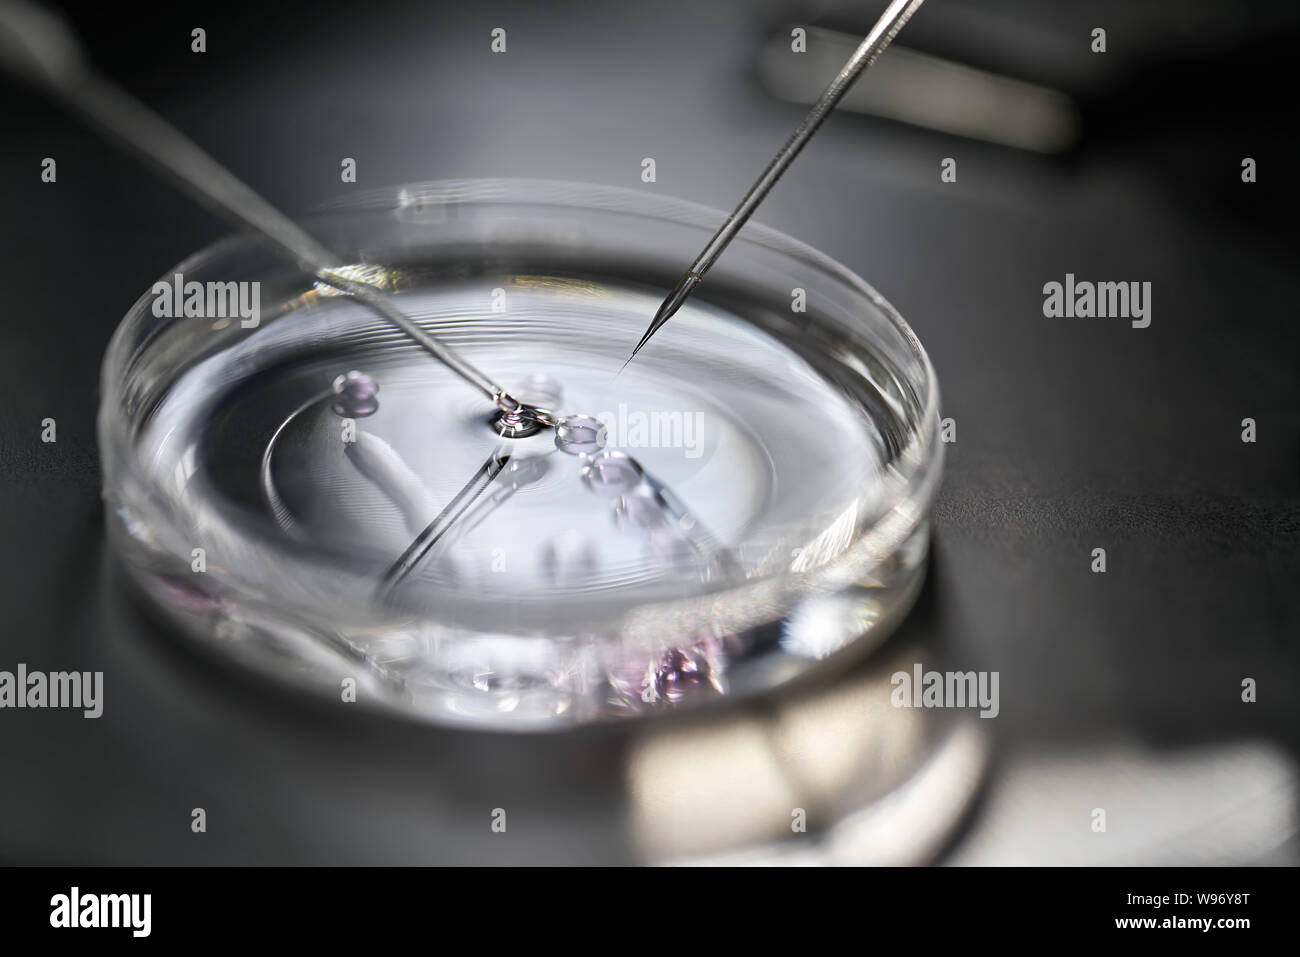 Process of in vitro fertilization in laboratory Stock Photo